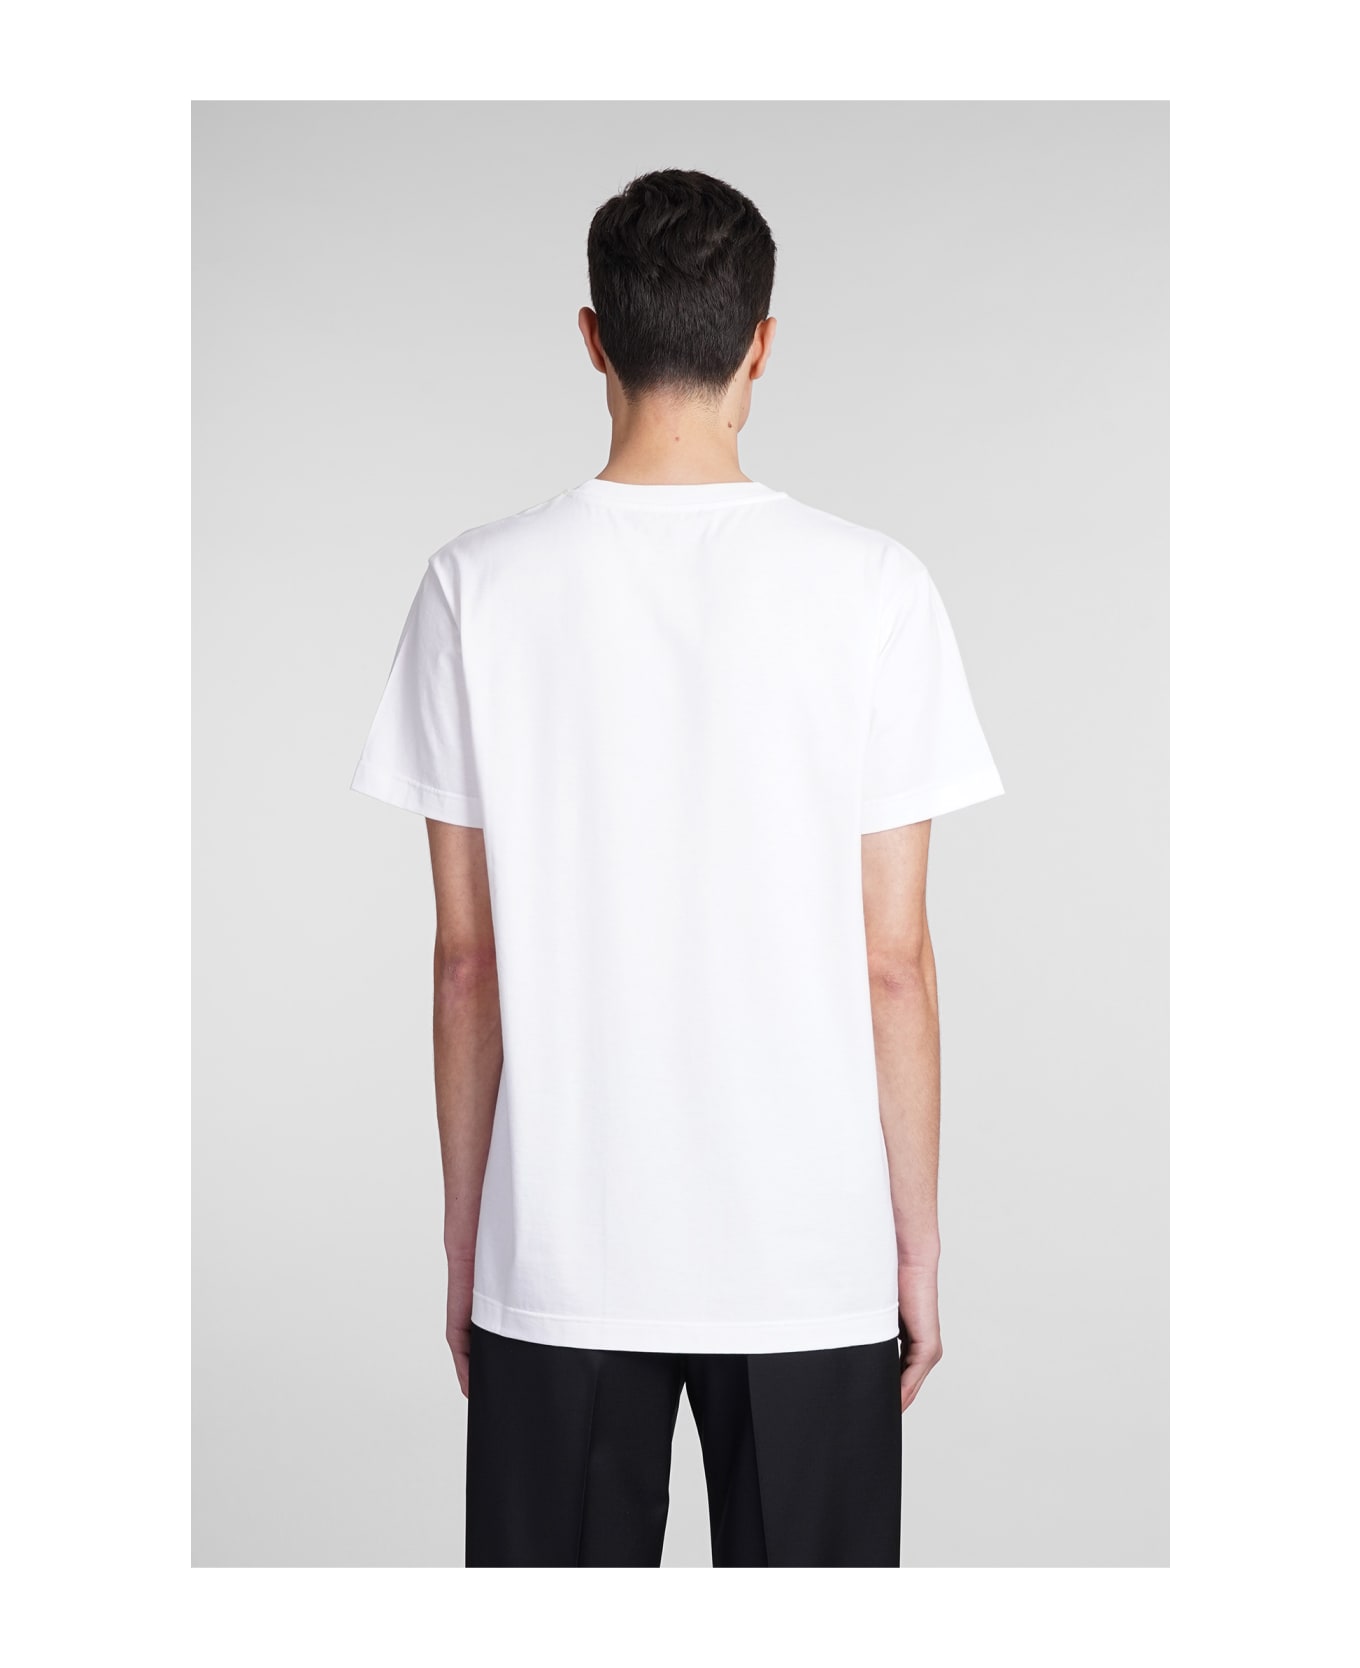 Giuseppe Zanotti Lr01 T-shirt In White Cotton - white シャツ